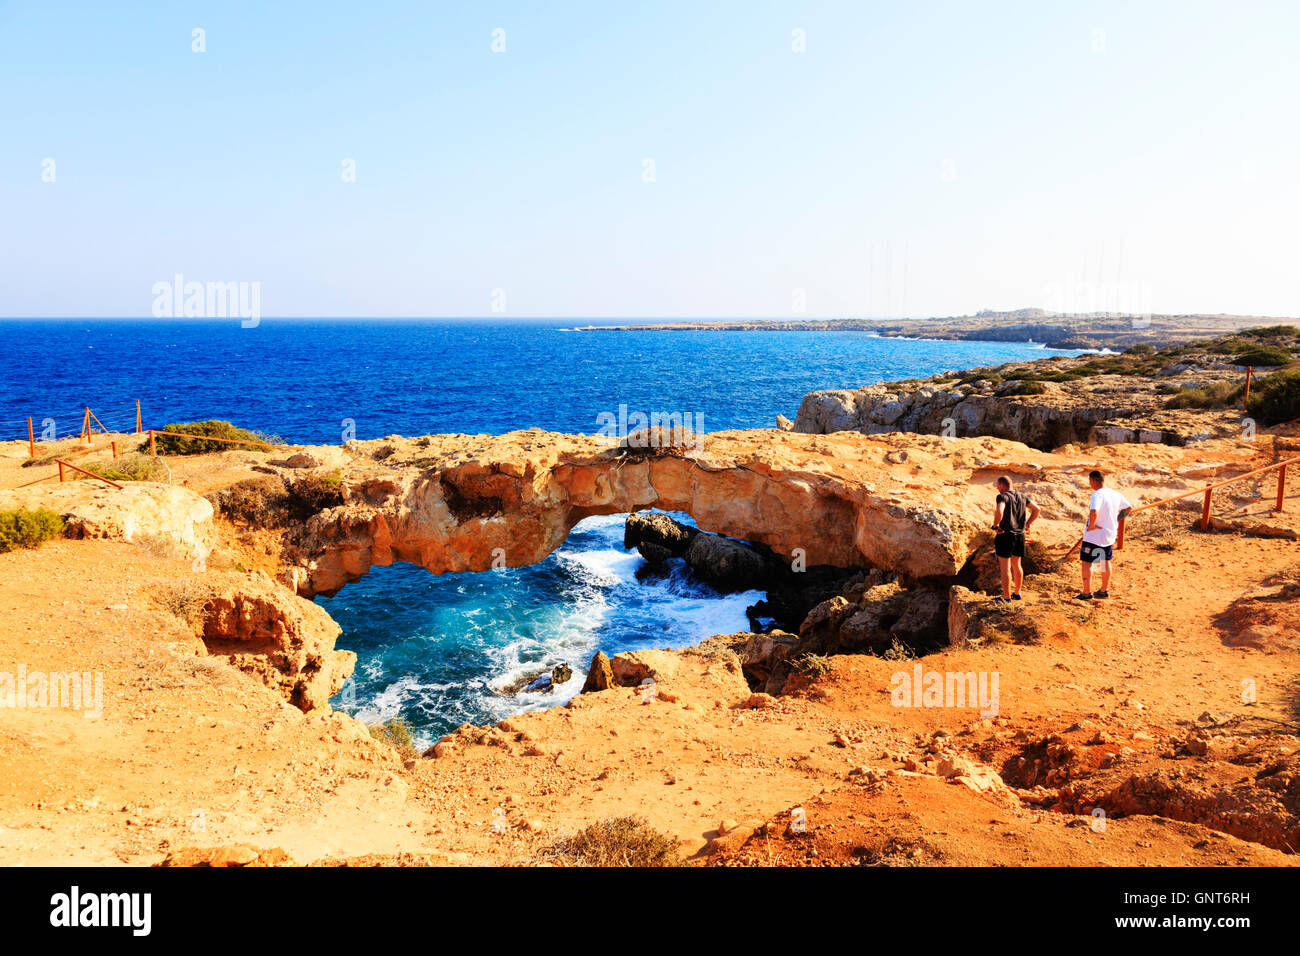 Les touristes d'admirer la voûte en pierre naturelle, Kamara, Koraka jouet, Ammohostos Cap Greco (Chypre). Banque D'Images